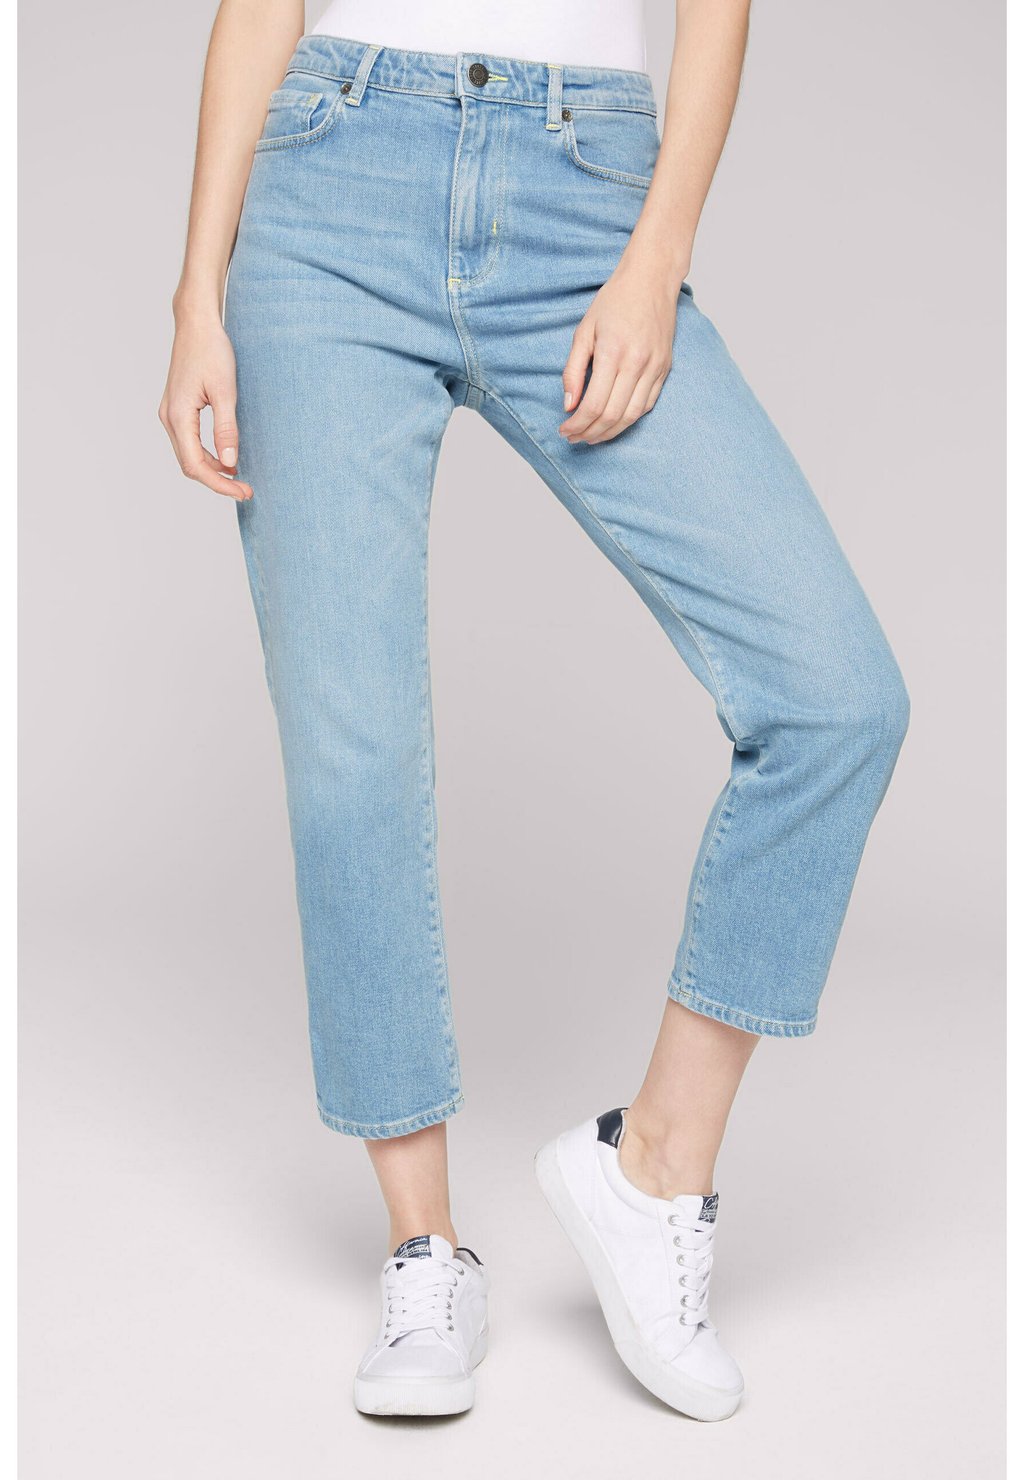 Джинсы свободного кроя MOM JEANS LE:A Soccx, цвет easy blue джинсы свободного кроя mom jeans le a soccx цвет dark blue